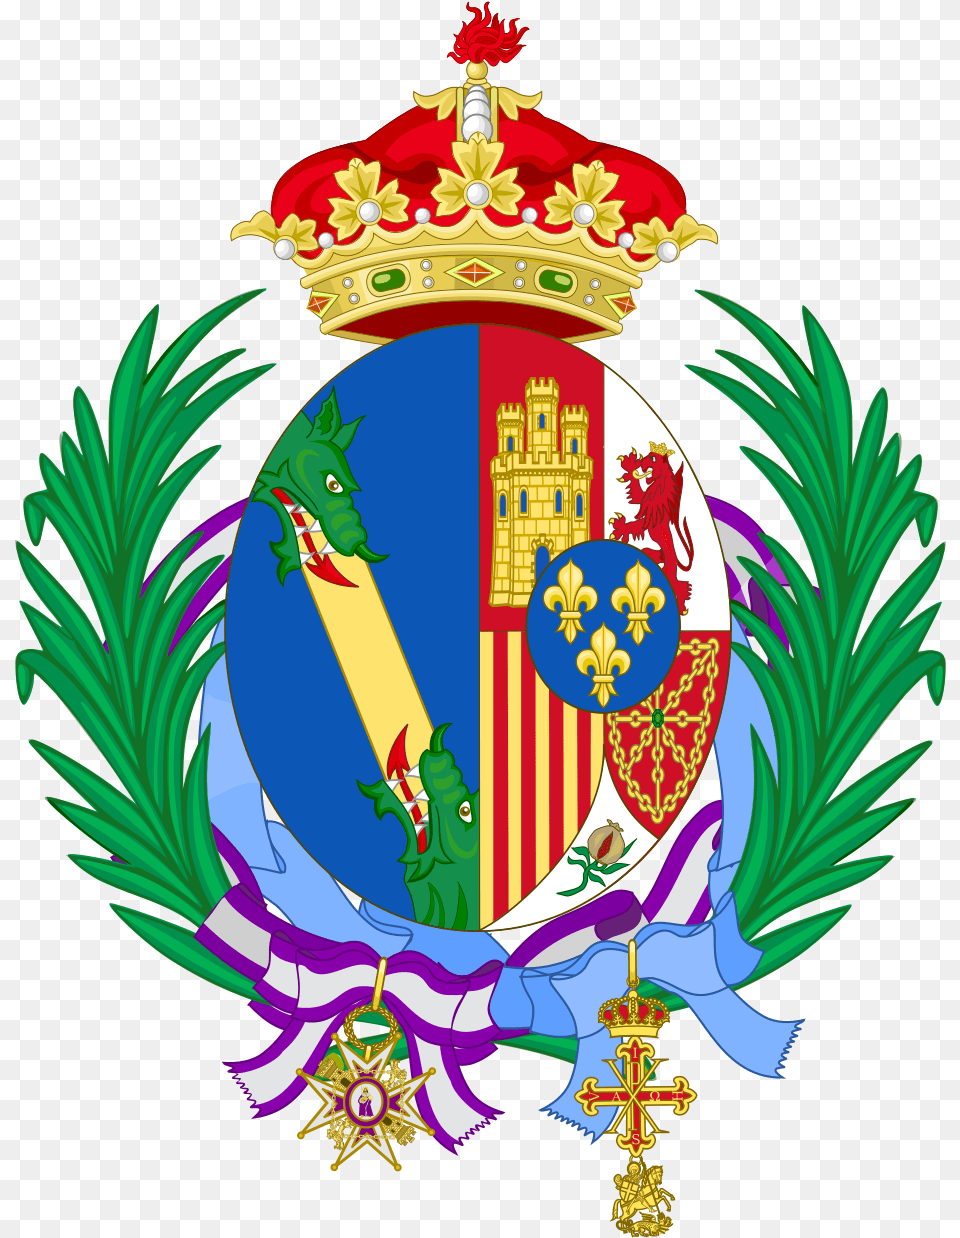 Coat Of Arms Of Infanta Margarita Of Spain Earl Of Athlone Coat Of Arms, Emblem, Symbol, Badge, Logo Free Transparent Png